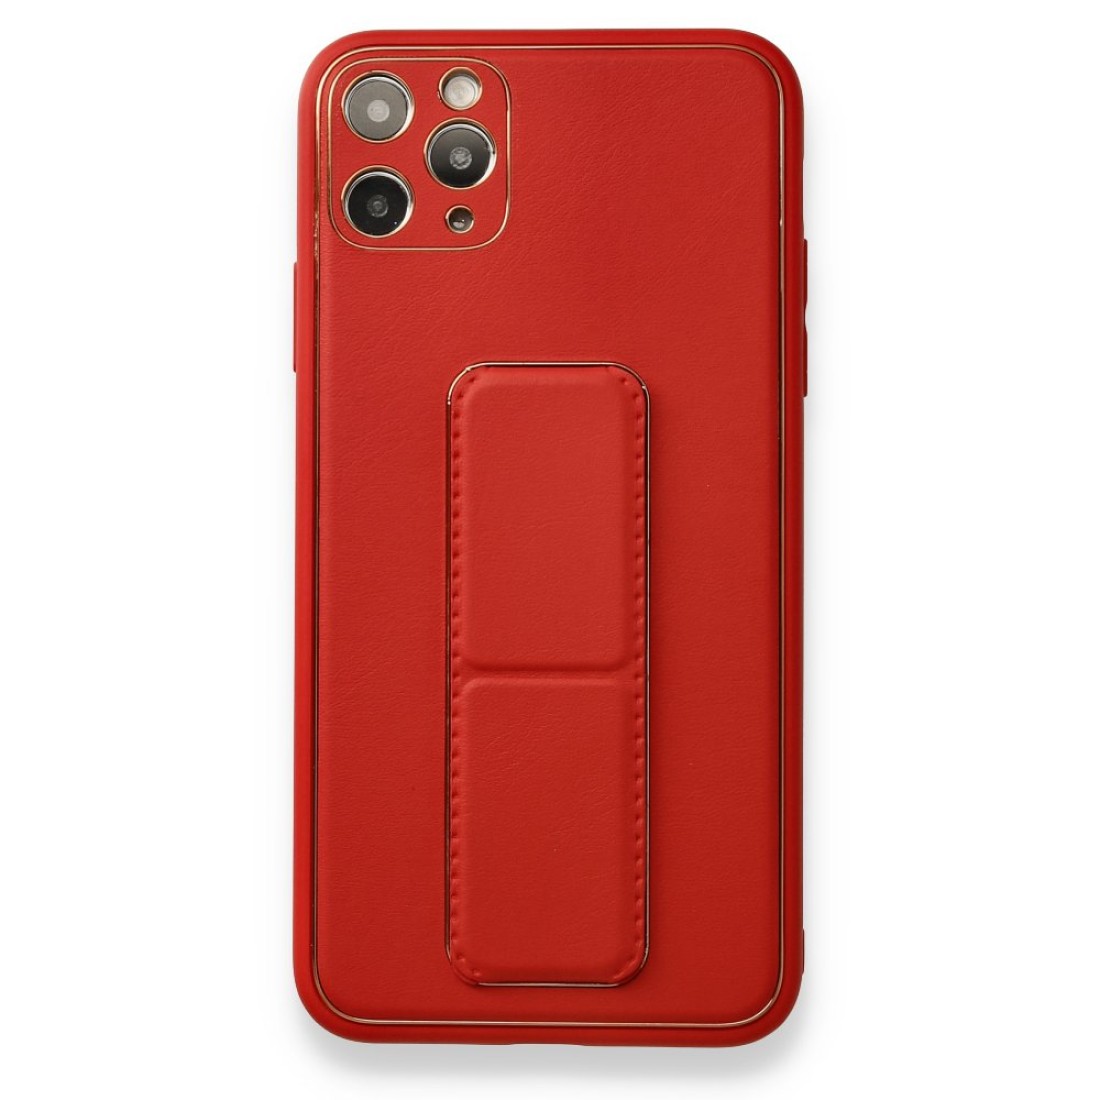 Apple iPhone 11 Pro Max Kılıf Coco Deri Standlı Kapak - Kırmızı